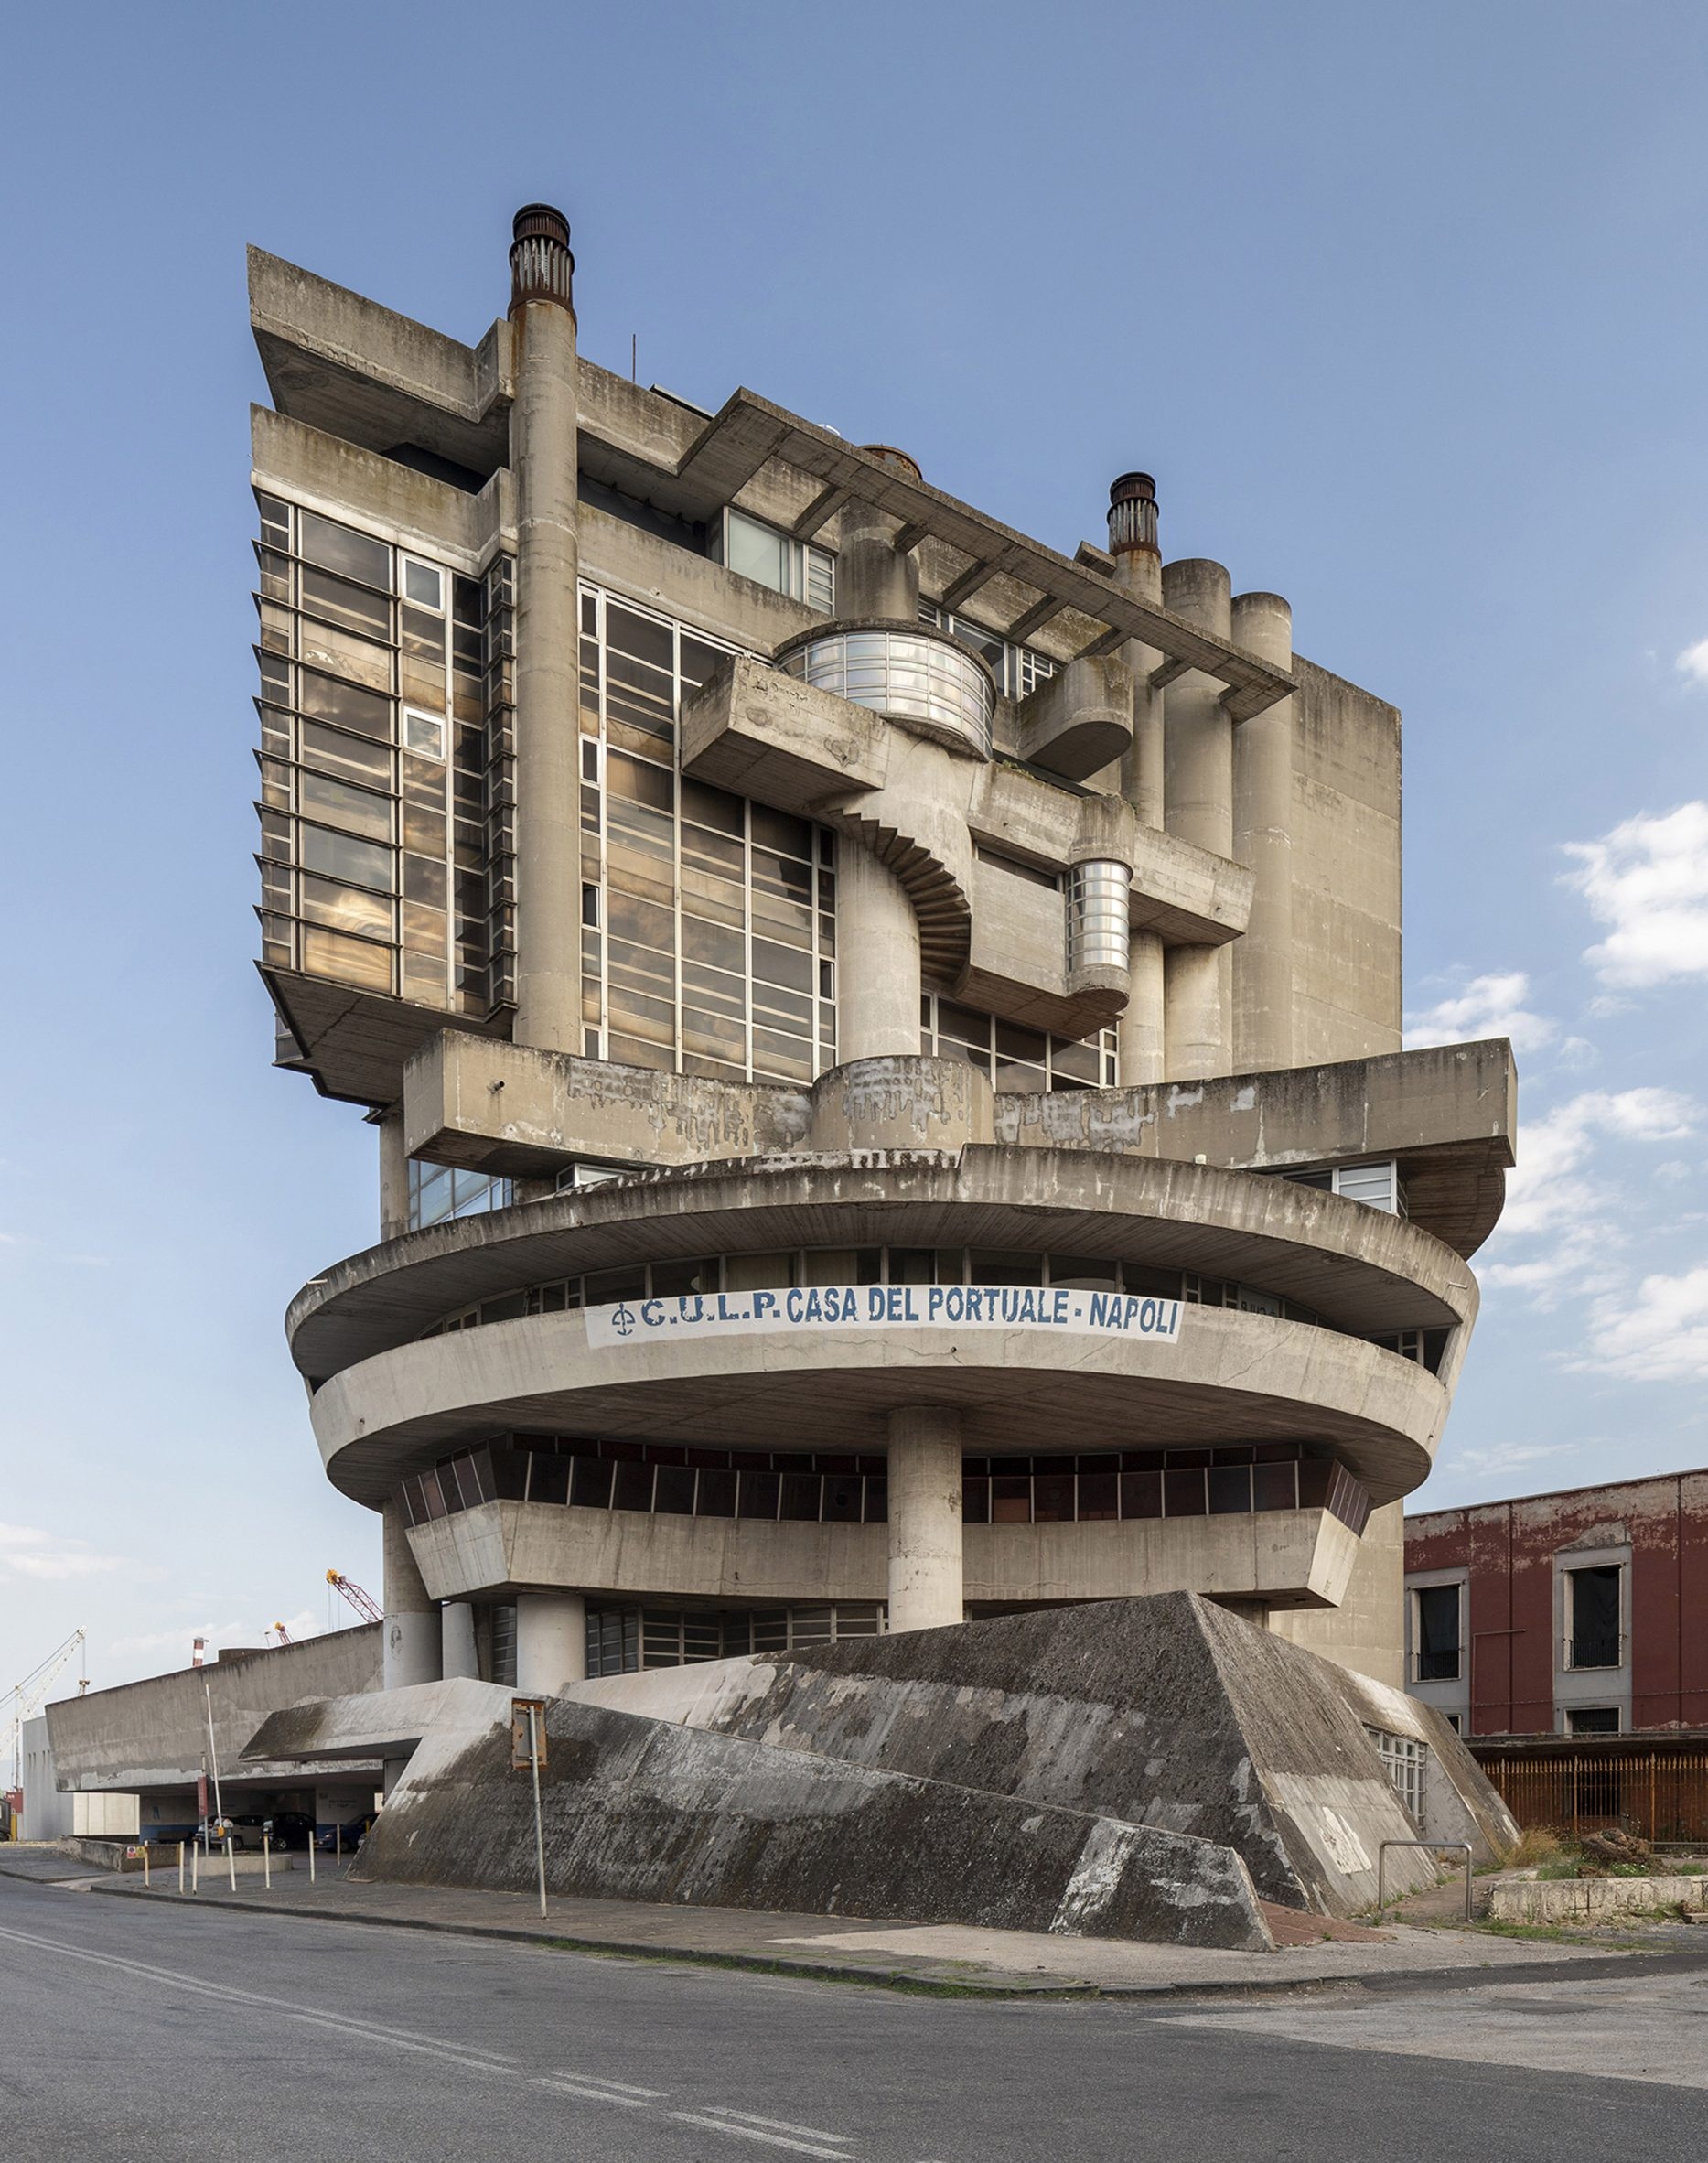 Casa del Portuale, Naples, építészet: Aldo Loris Rossi (1981)